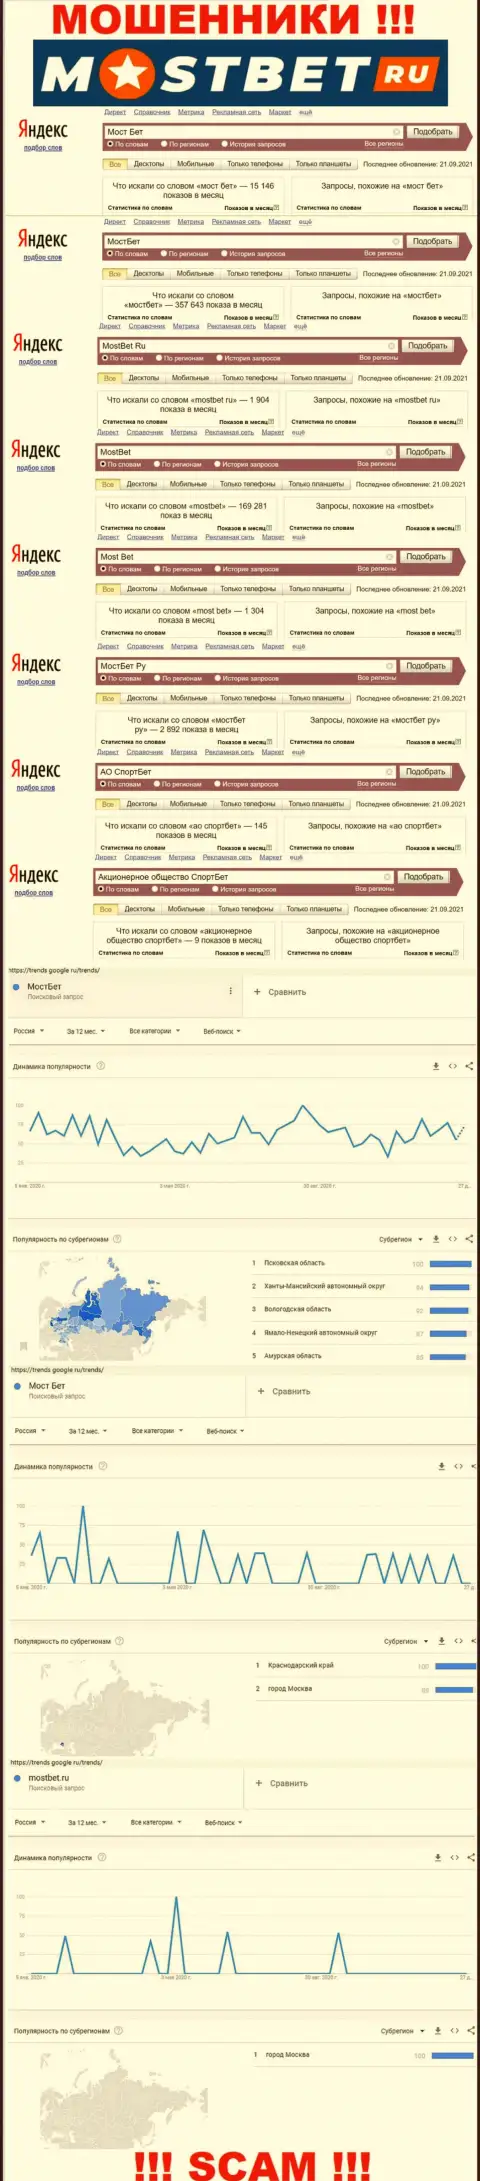 Насколько лохотрон МостБет популярный во всемирной сети internet ?